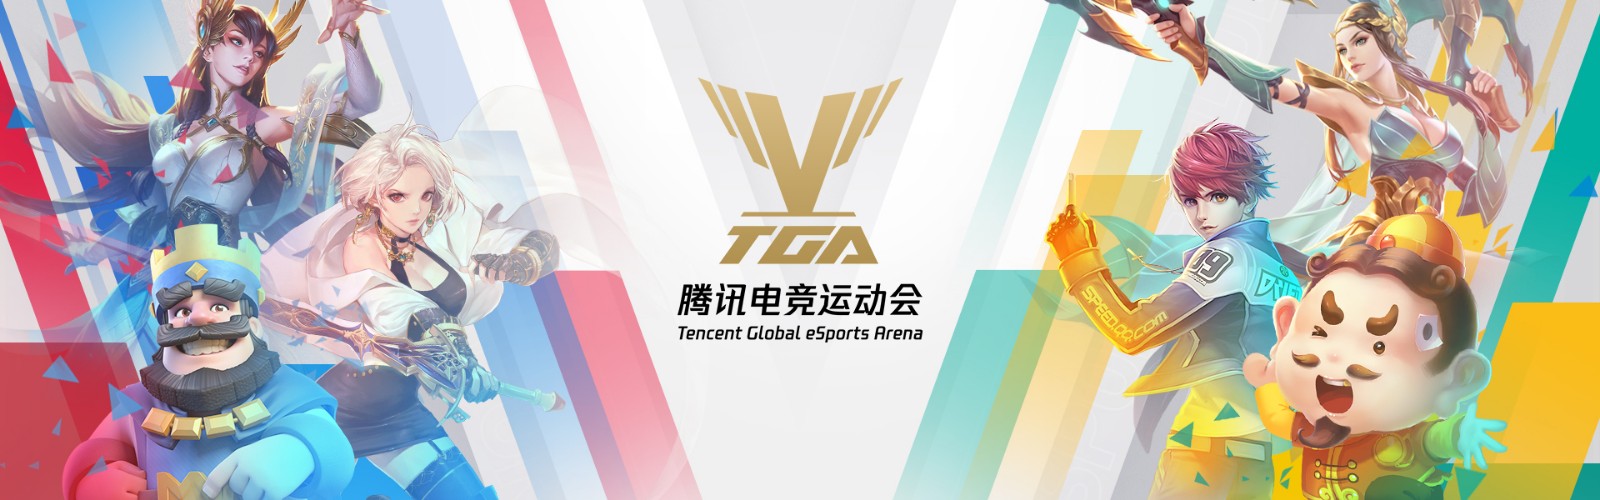 2019 TGA腾讯电竞运动会四月分站赛今日揭幕 线上线下同步观赛